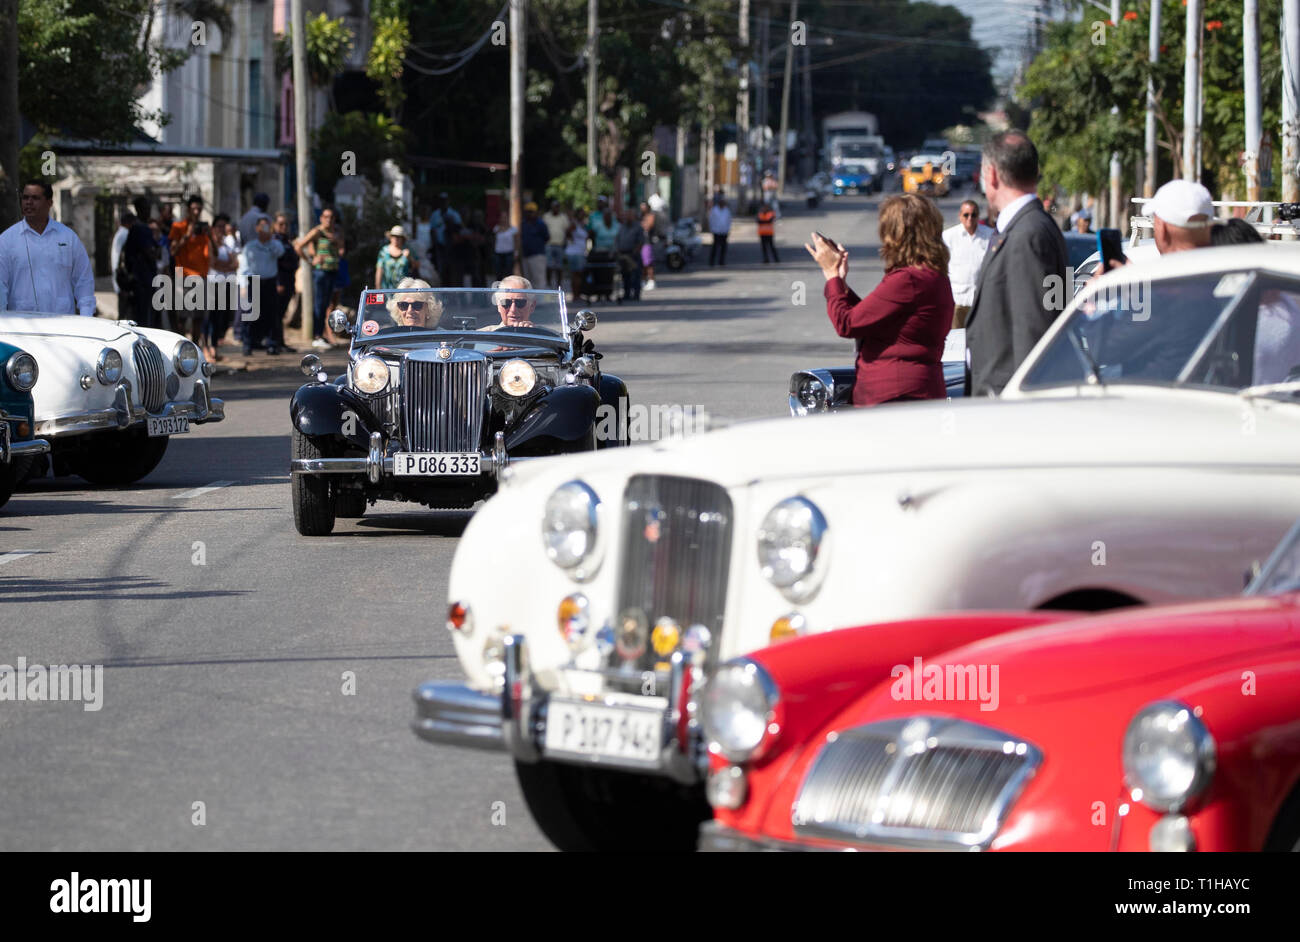 Il Principe di Galles e la duchessa di Cornovaglia frequentare un British Classic Car evento in John Lennon Square, Havana, Cuba, come parte di un viaggio storico che celebra i legami culturali tra il Regno Unito e la stato comunista. Foto Stock